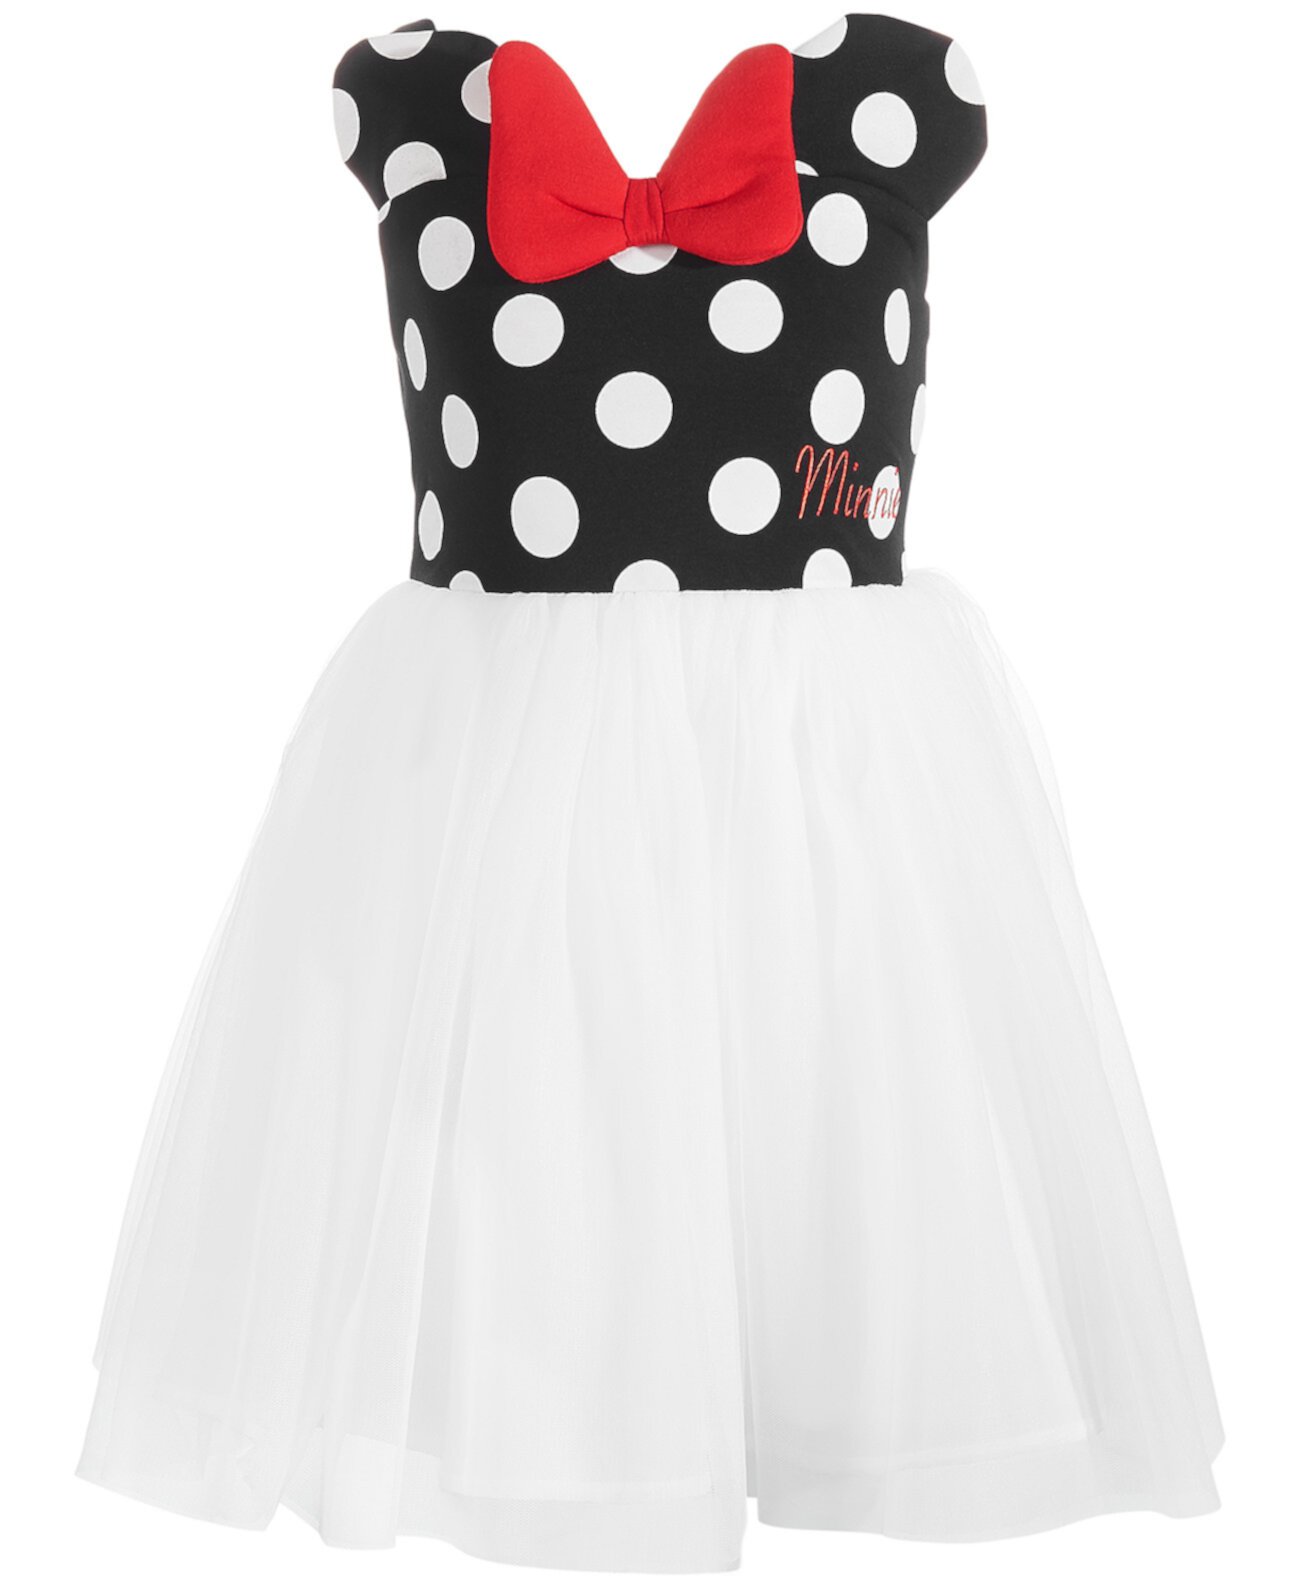 Платье Little Girls Minnie Mouse в горошек и сетку Disney